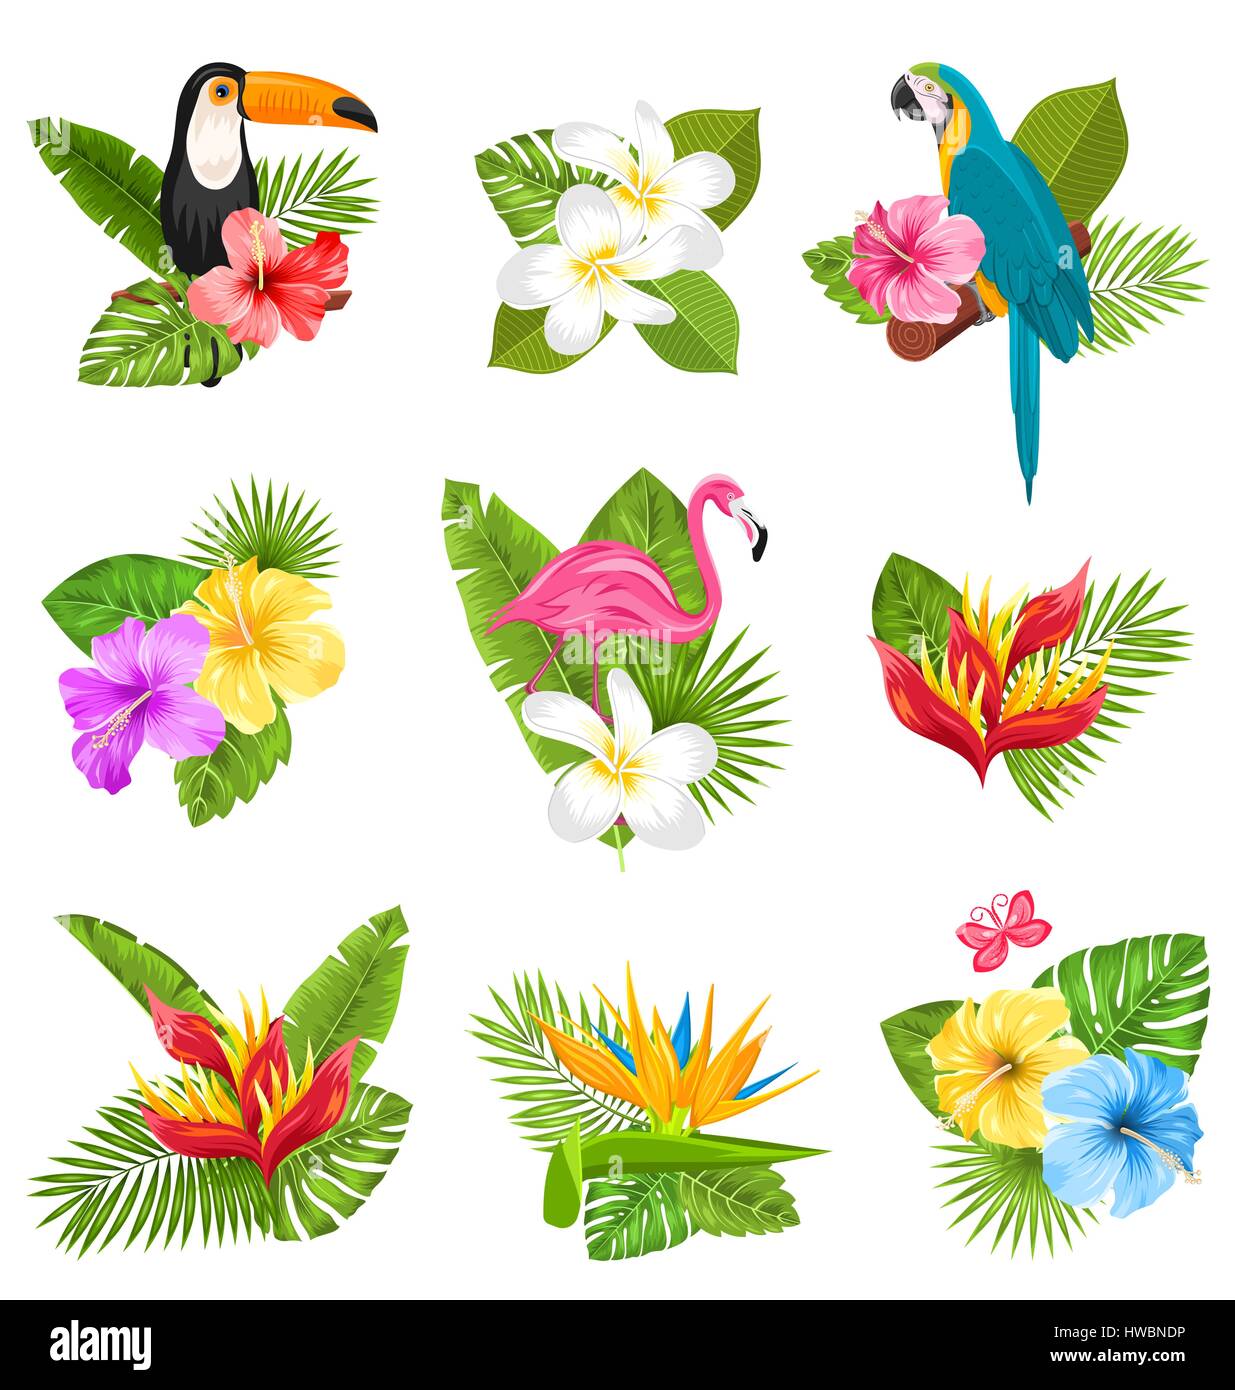 Establecer la composición con flores tropicales, aves exóticas y plantas  Imagen Vector de stock - Alamy